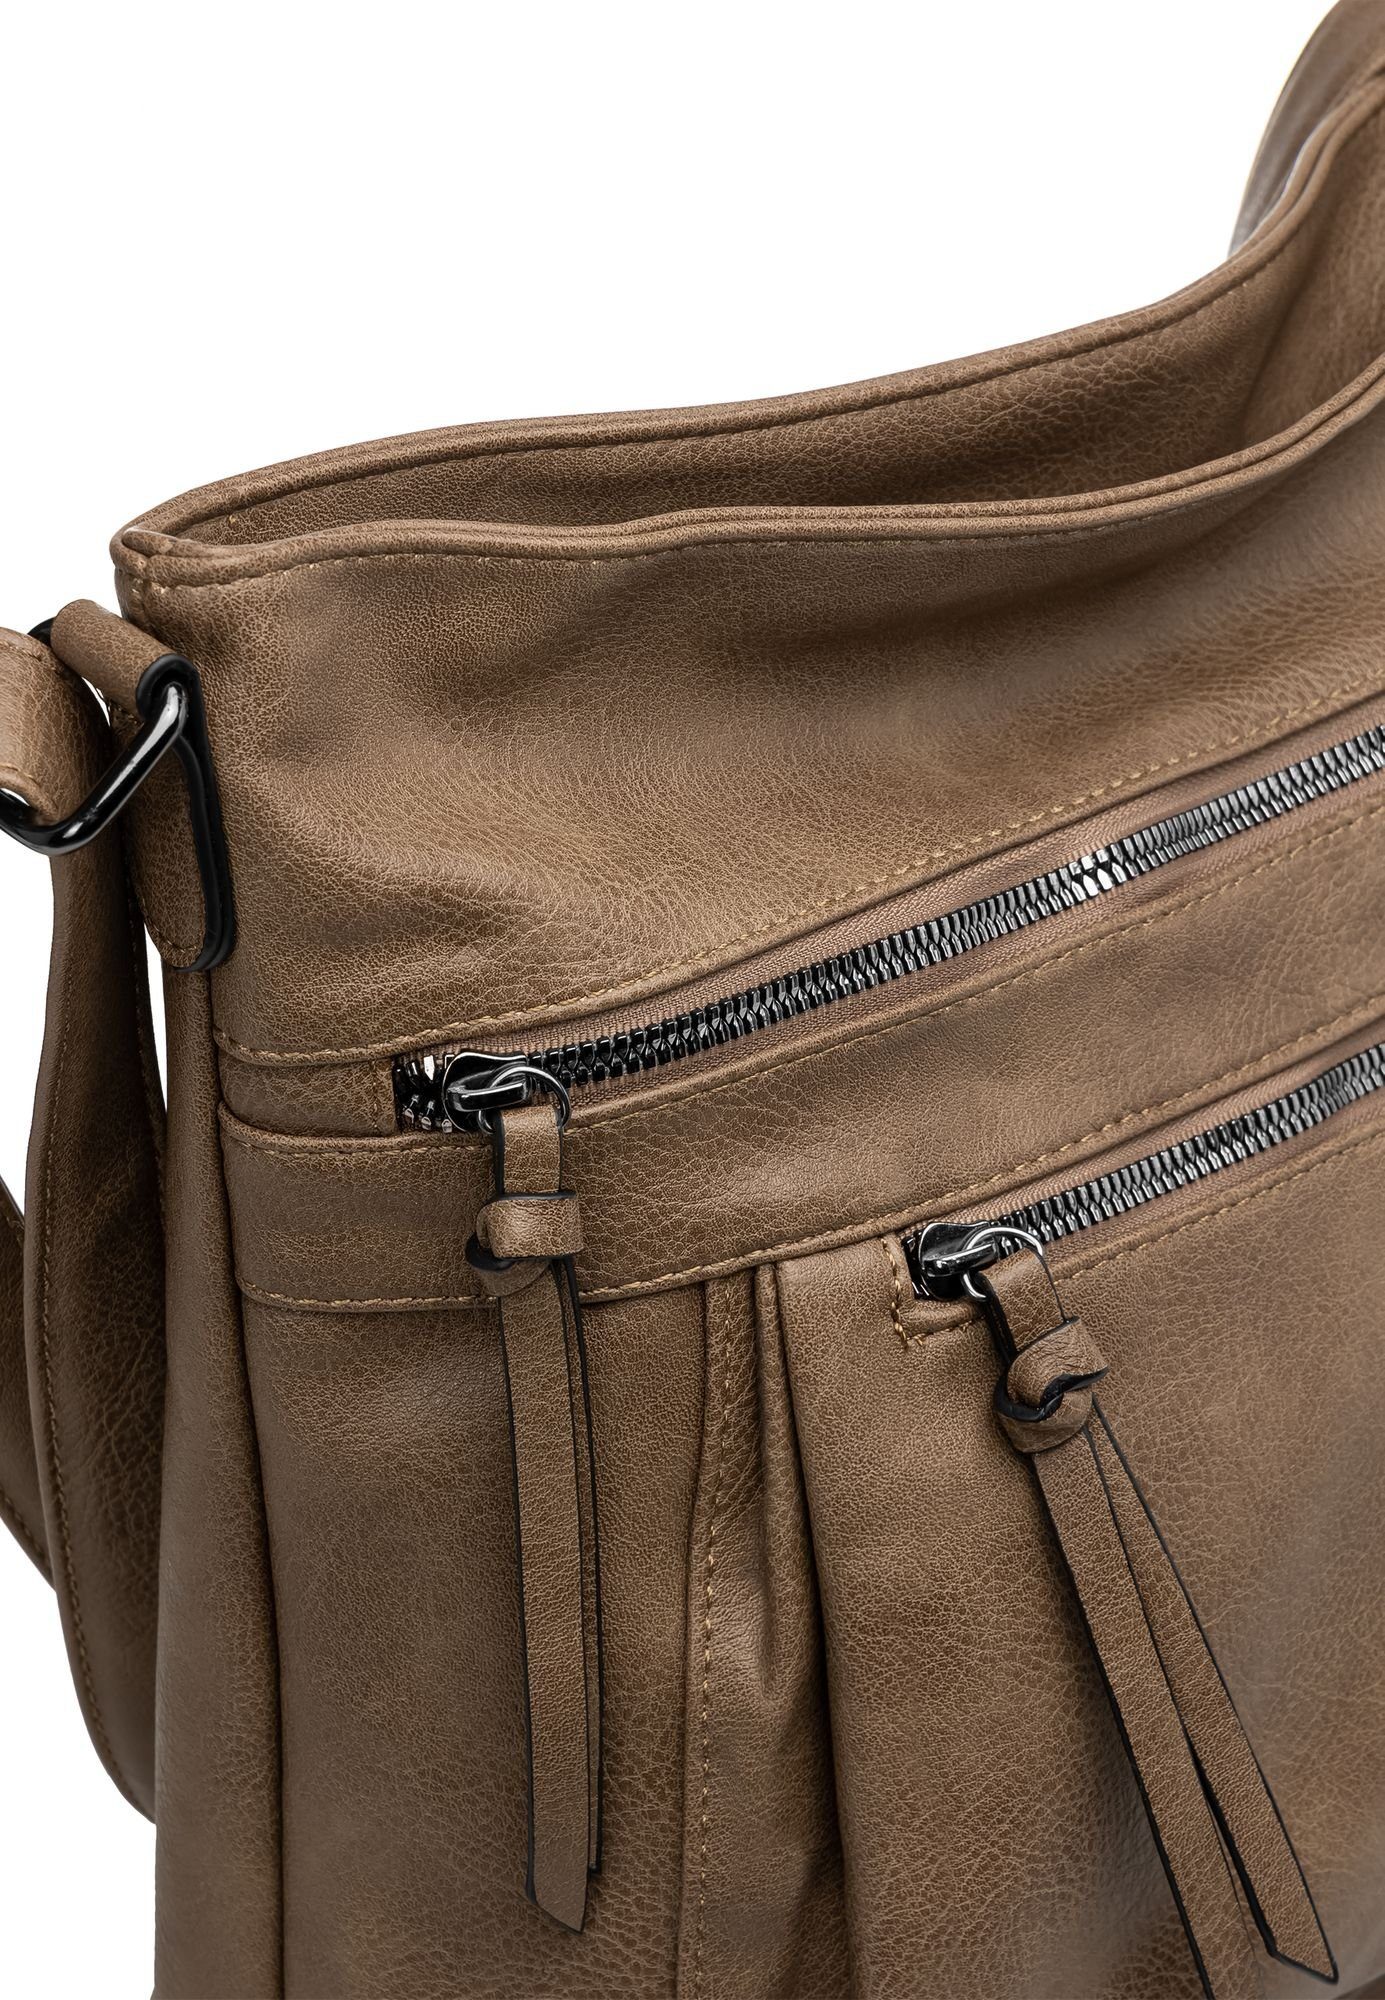 Crossbody Umhängetasche Bag TS1070 mittelgroße Umhängetasche sportlich elegante khaki Caspar Damen